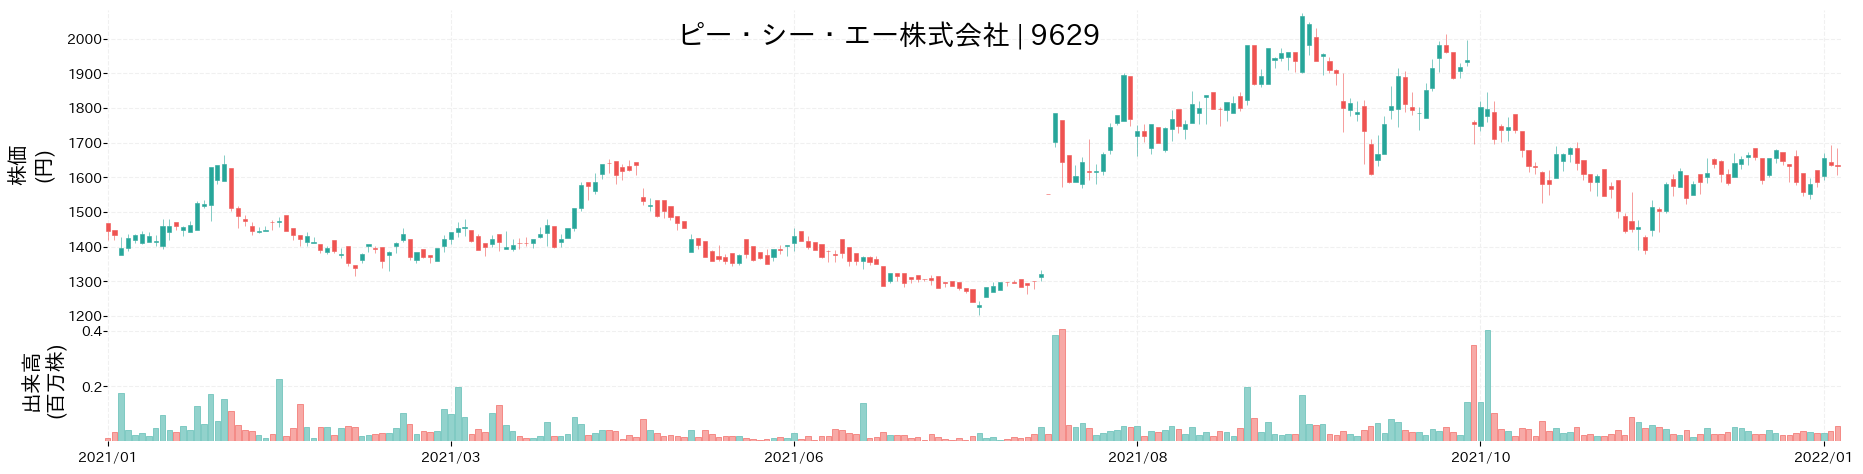 ピー・シー・エーの株価推移(2021)